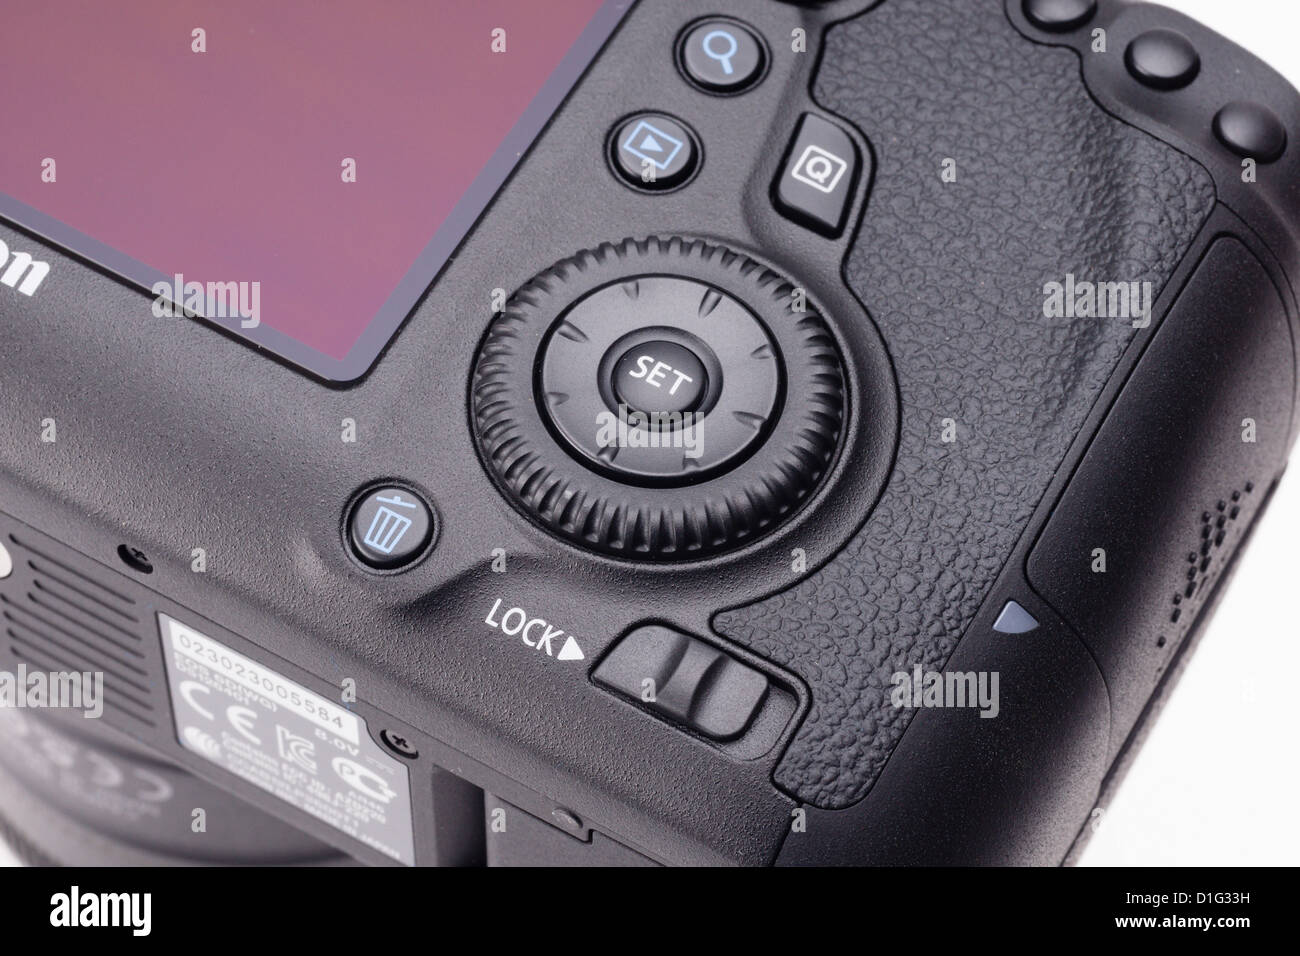 Attrezzature fotografiche - Canon EOS 6D reflex digitale full-frame, prezzo di bilancio. Controlli. Foto Stock